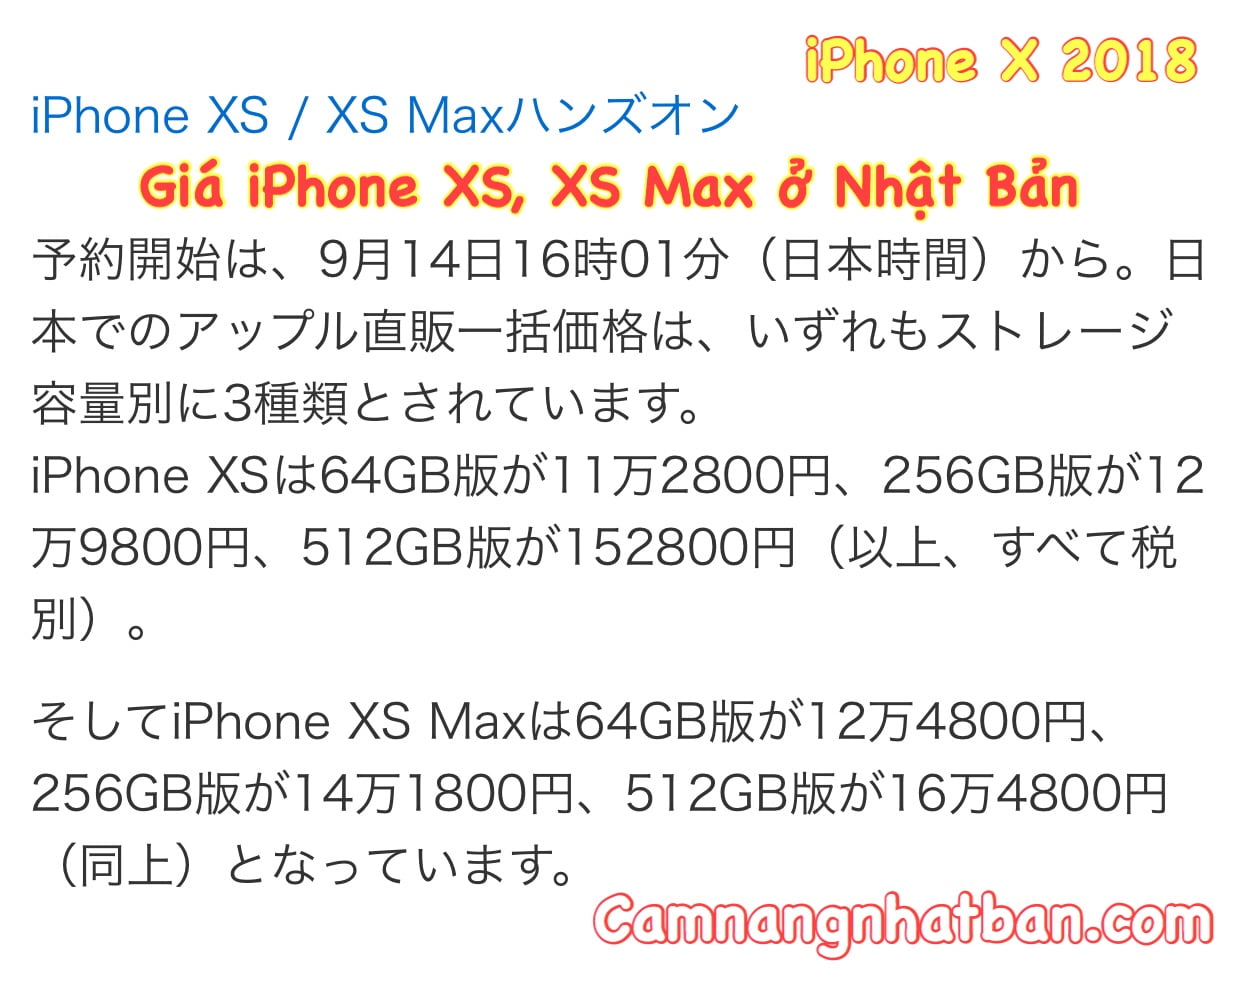 Giá iPhone XS và iPhone XS Max ở Nhật Bản, ngày đặt hàng